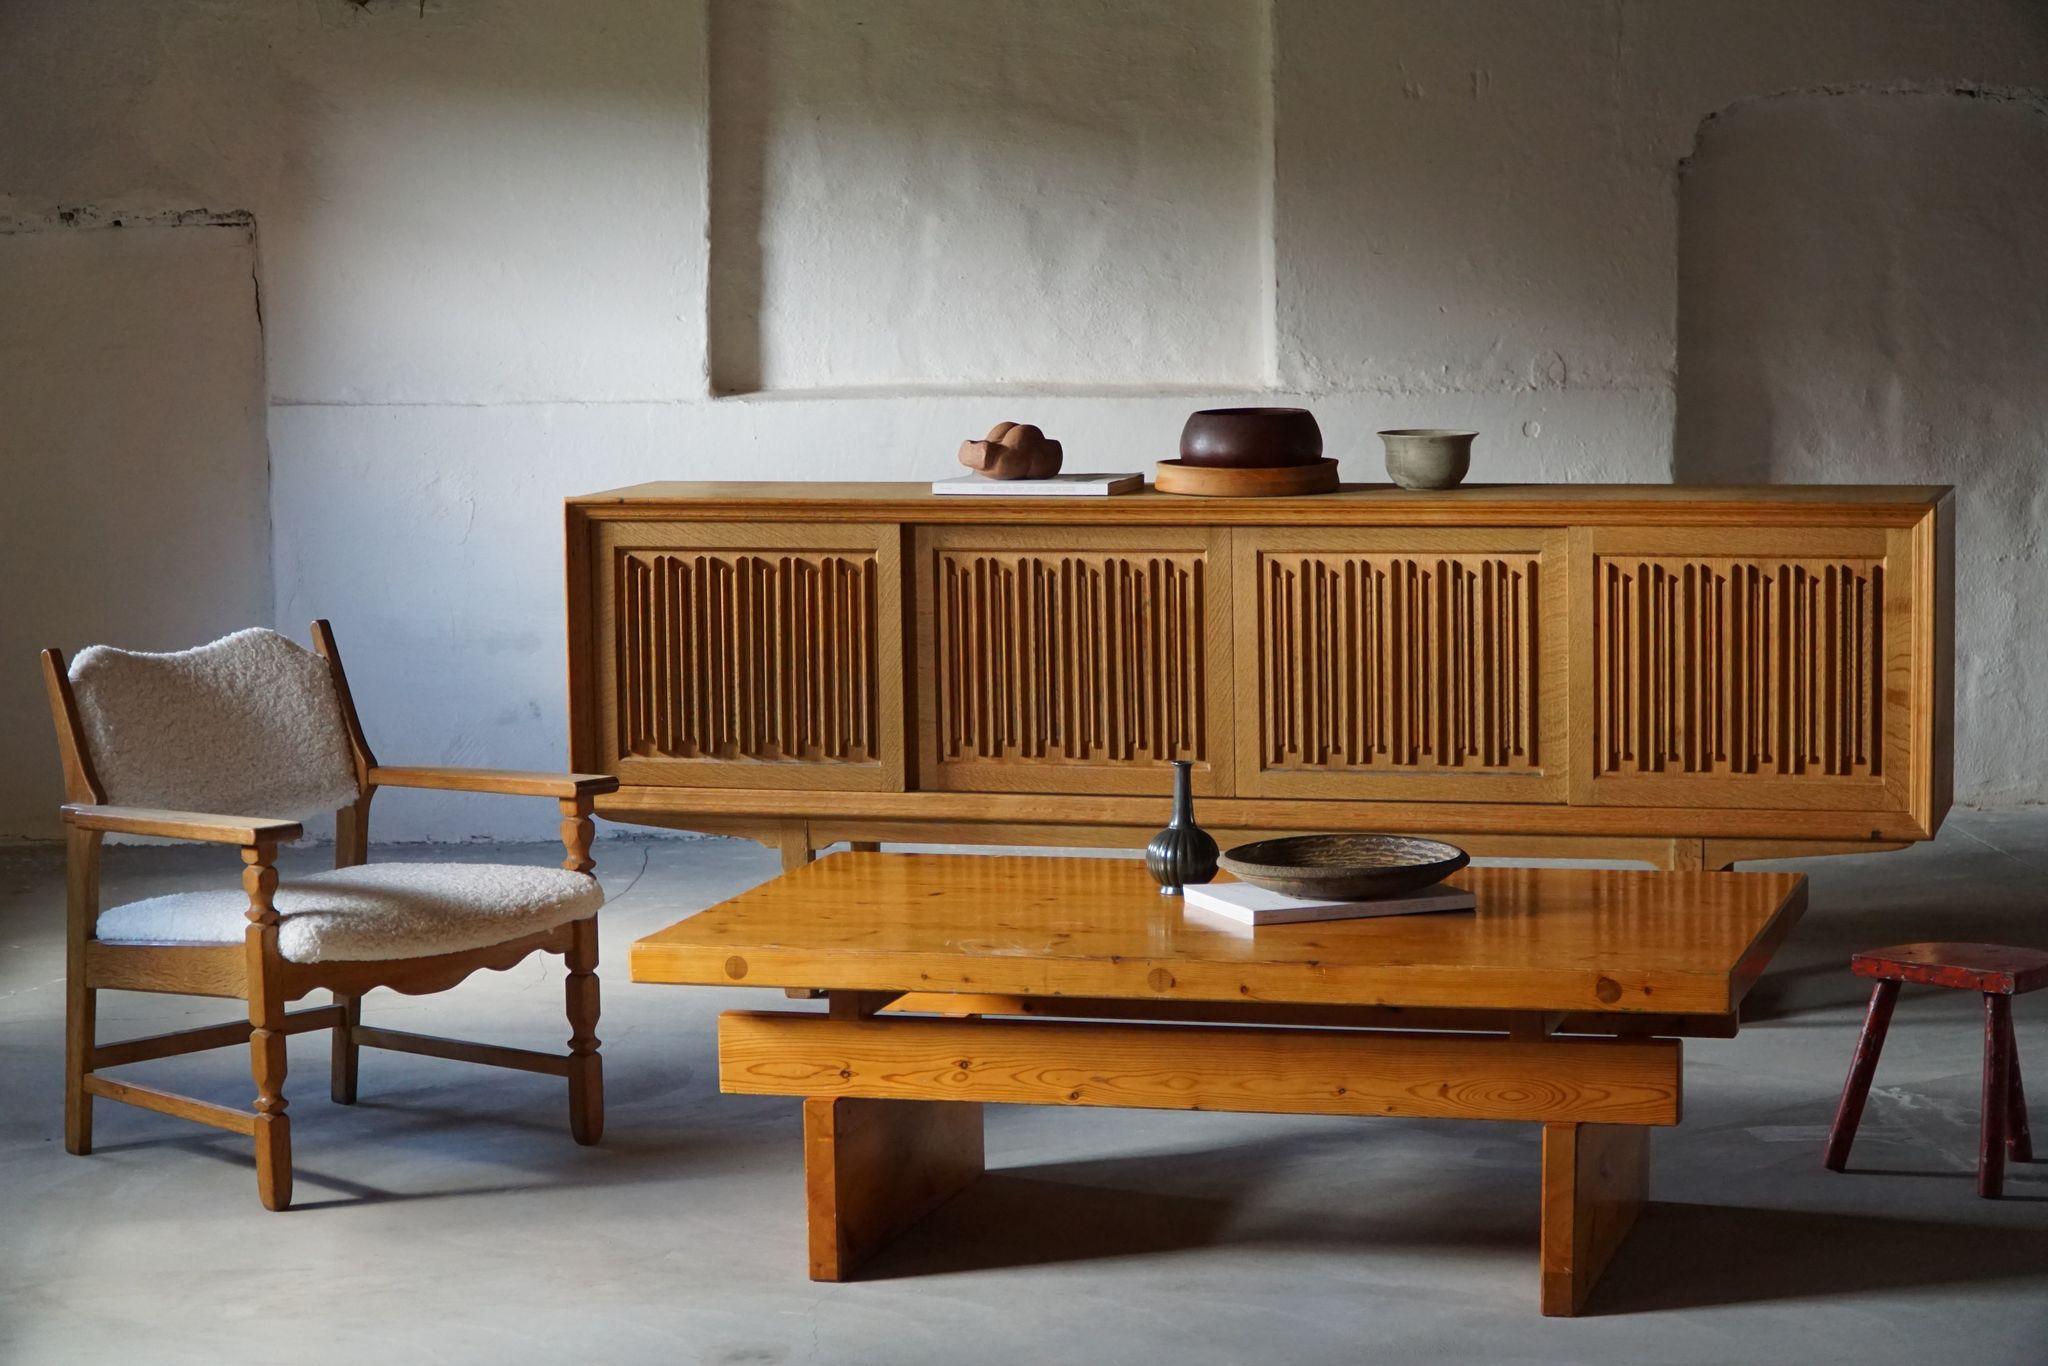 Grande table basse rectangulaire en pin massif, fabriquée par le designer suédois Christer Larsson pour Sven Larsson Möbelshop dans les années 1960. 

Fabrication artisanale de qualité, parfaitement adaptée à tout style d'intérieur. Un décor